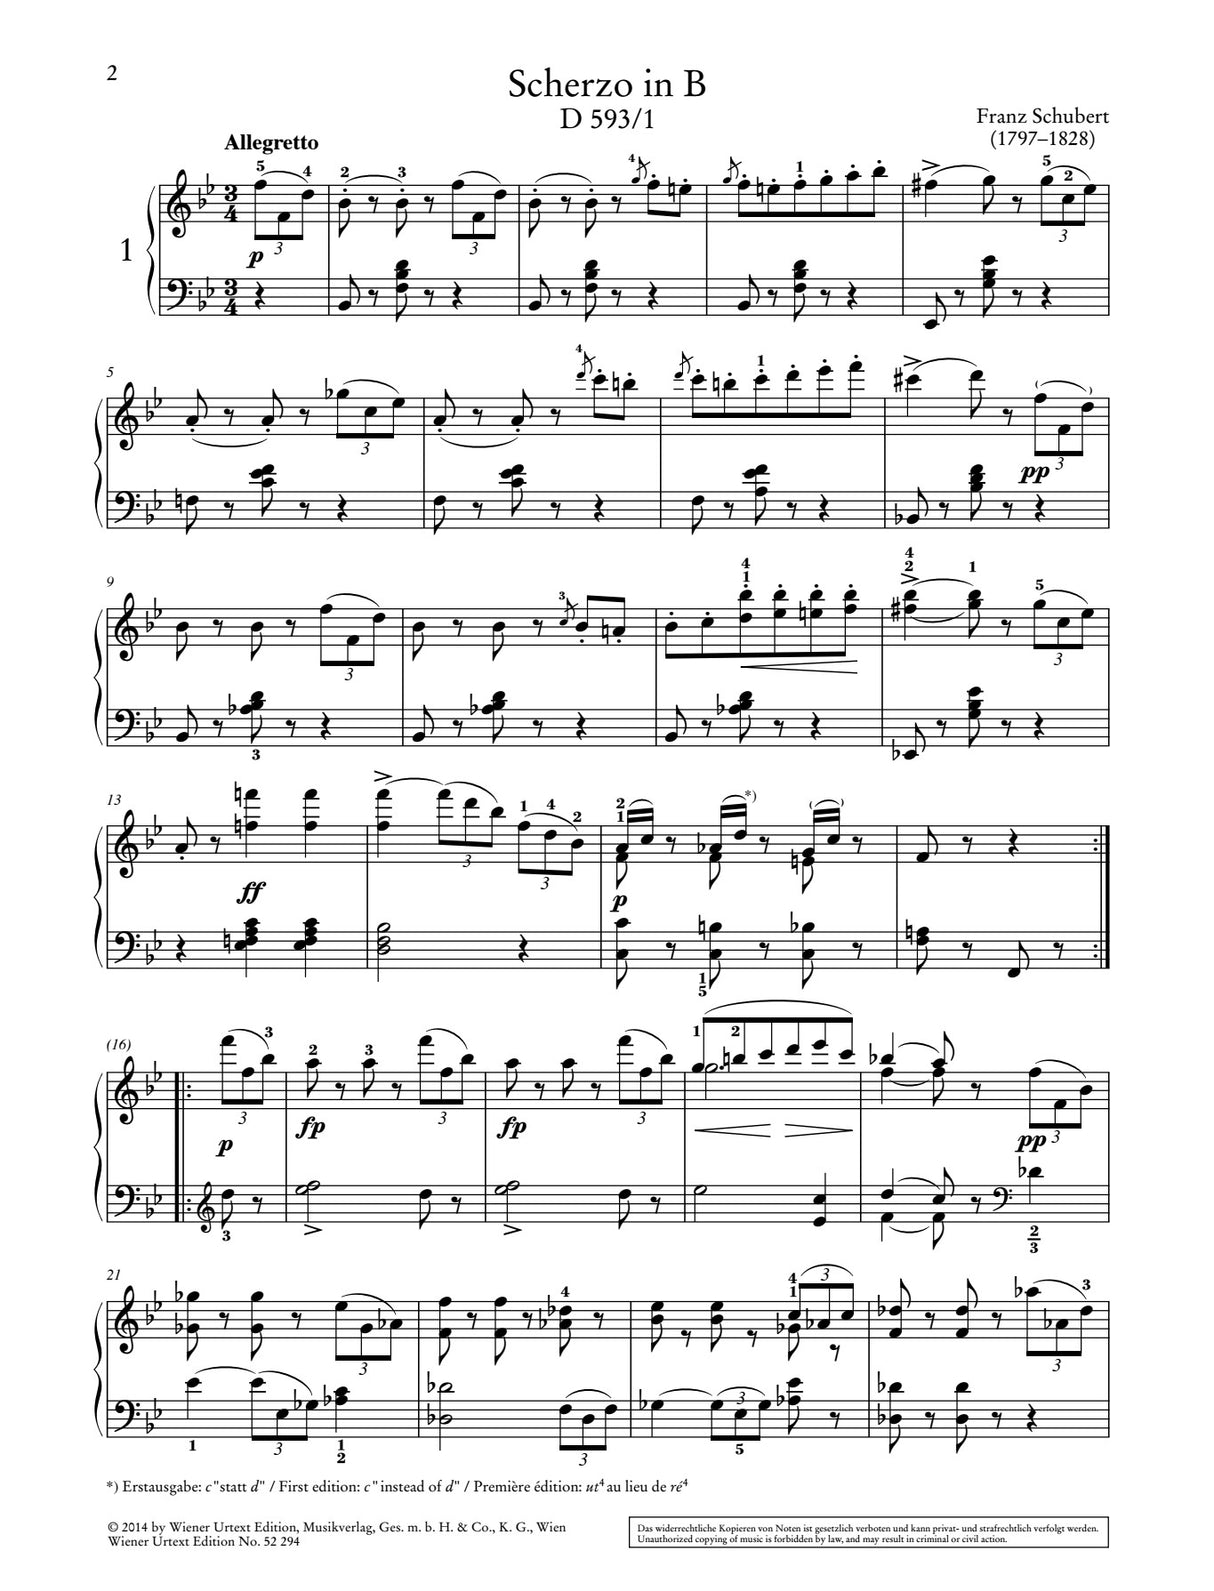 Schubert: 3 Scherzi, D. 593 & D. 570